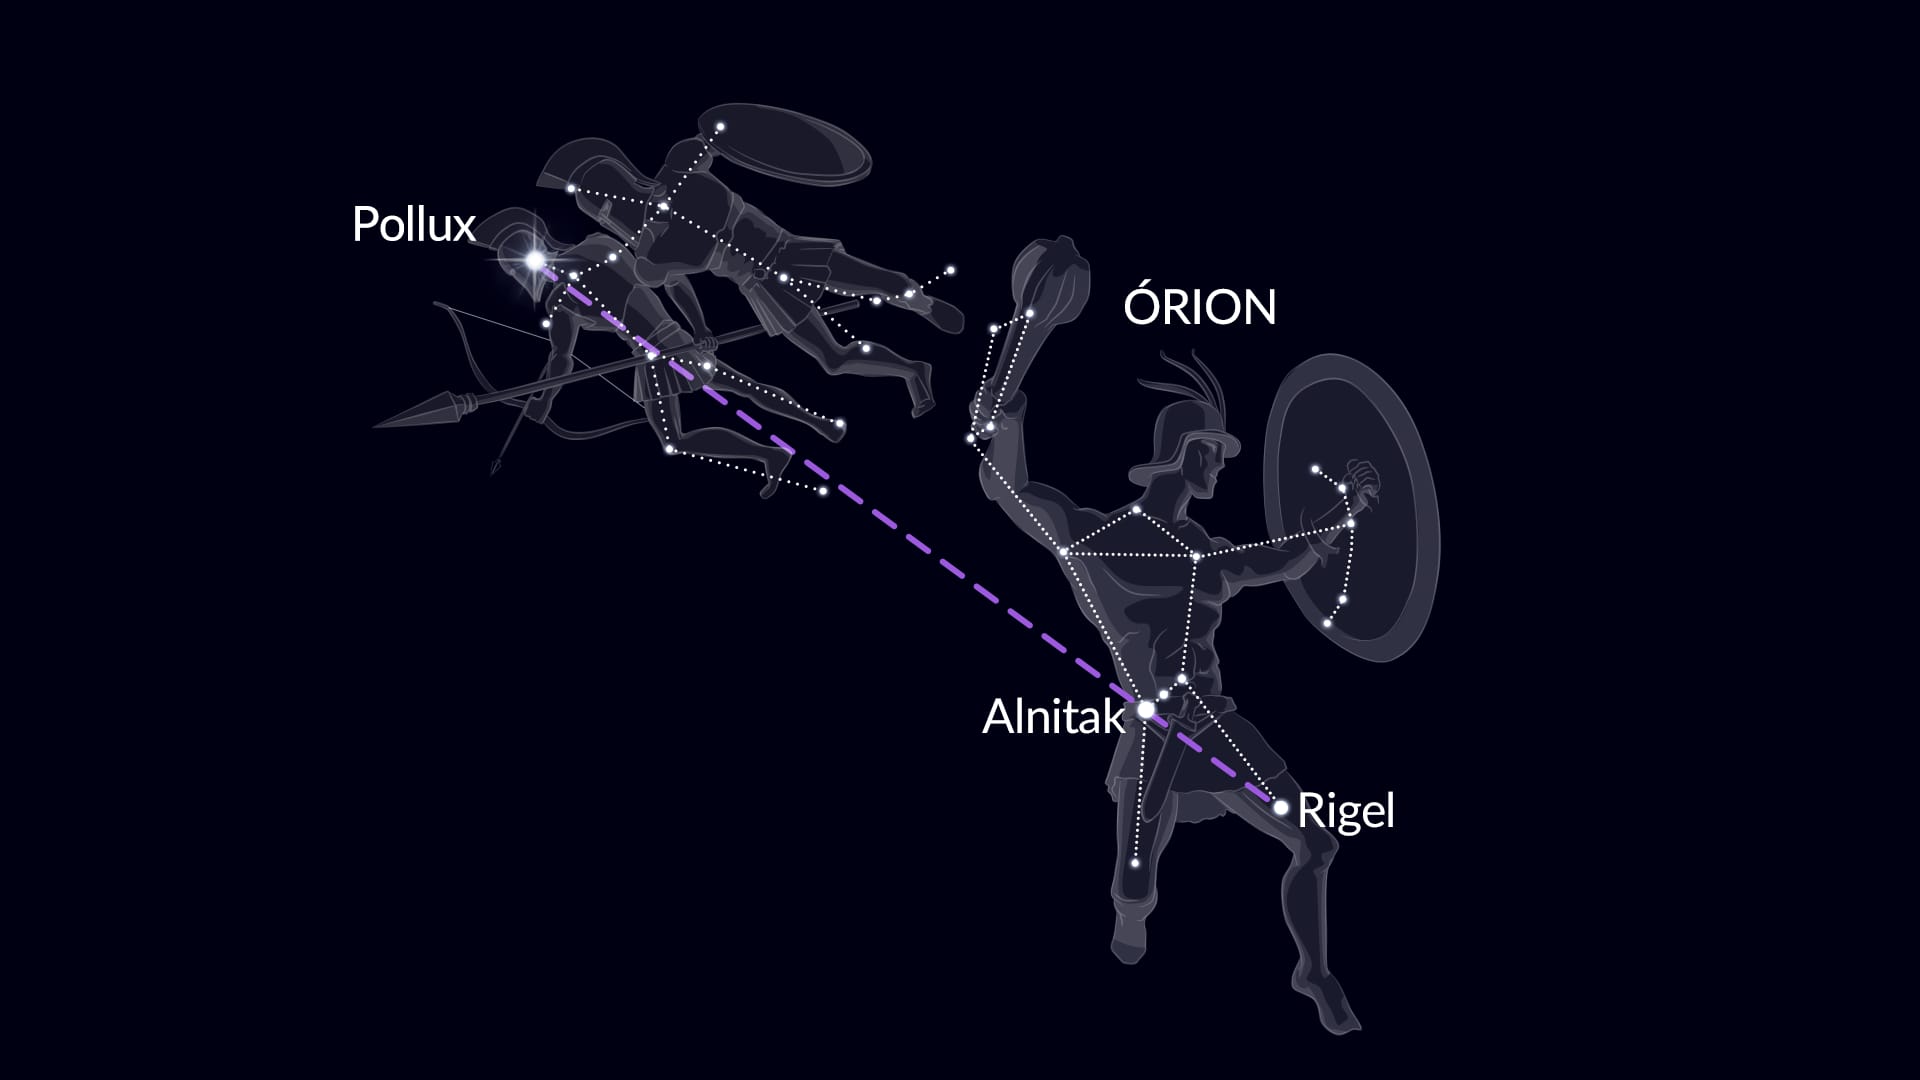 Encontre Pollux via Orion